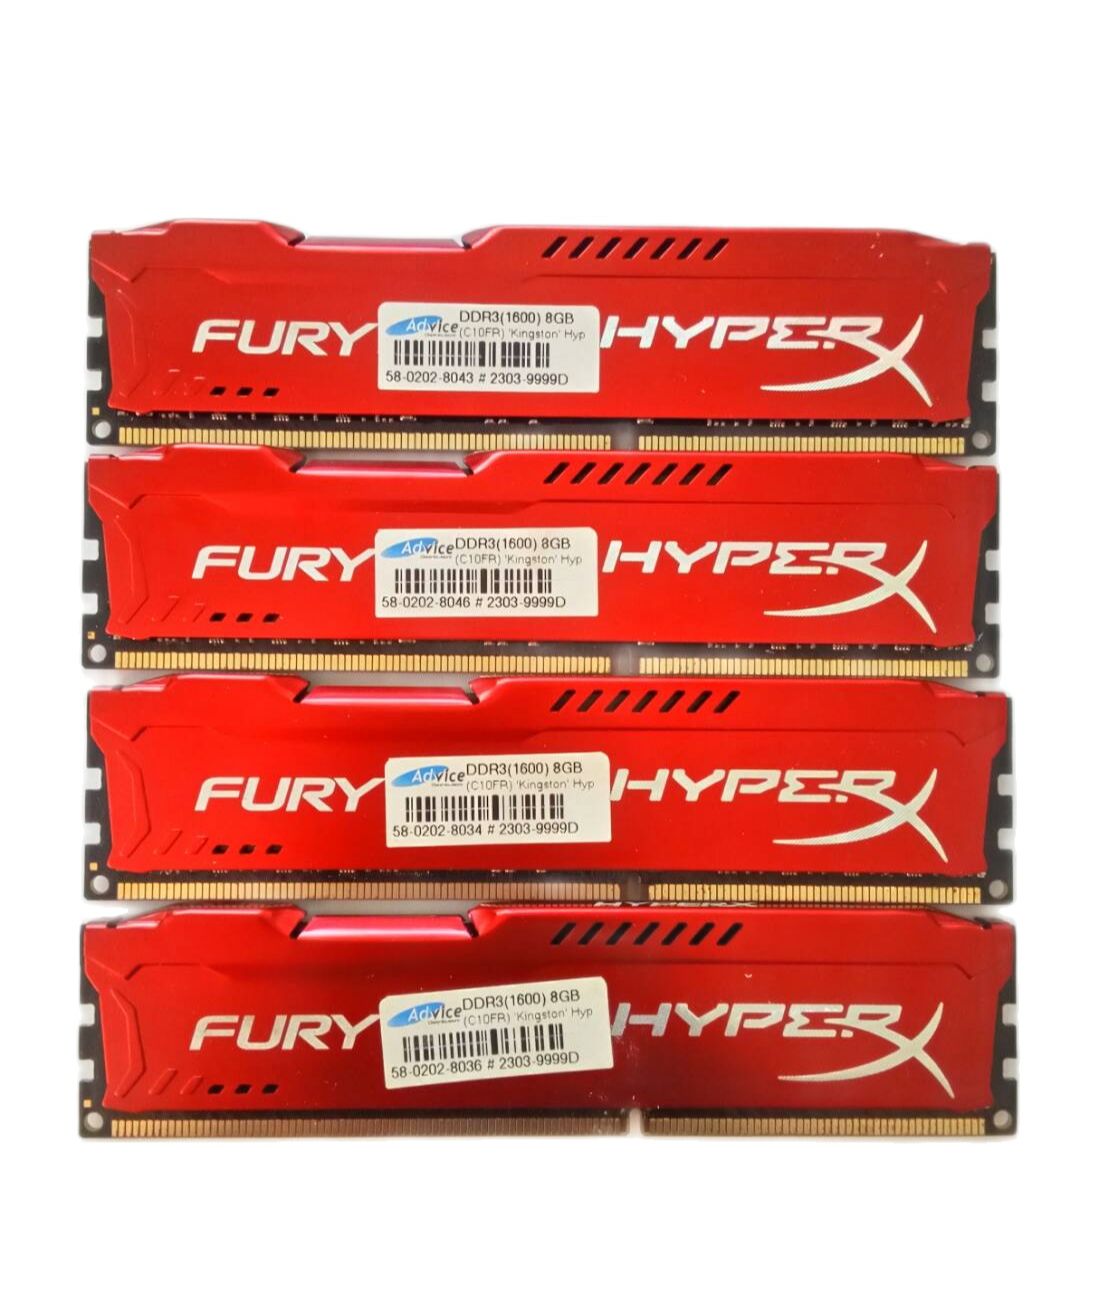 มาใหม่ สวยๆ พร้อมกล่อง( สีแดง)  แรม Kingston HyperX FURY แท้  8x1  8GB DDR3/บัส 1600  ประกัน  synnex-แอดไวซ์ สภาพๆใหม่ๆ RAMคุณภาพสูง สินค้าตามรูปปก